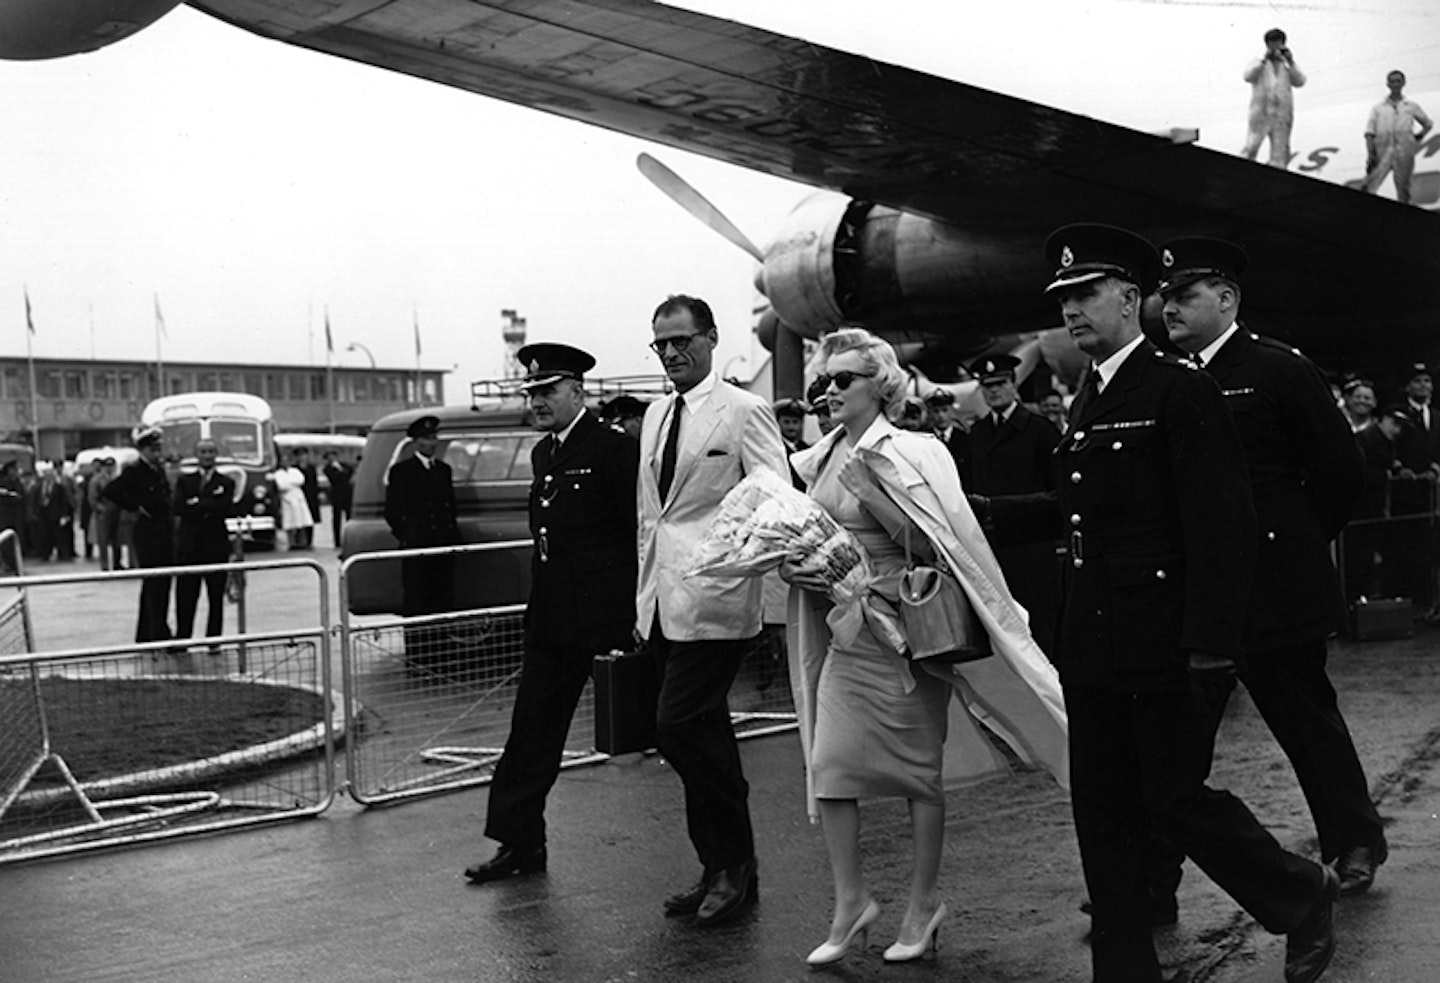 Marilyn arrives in UK